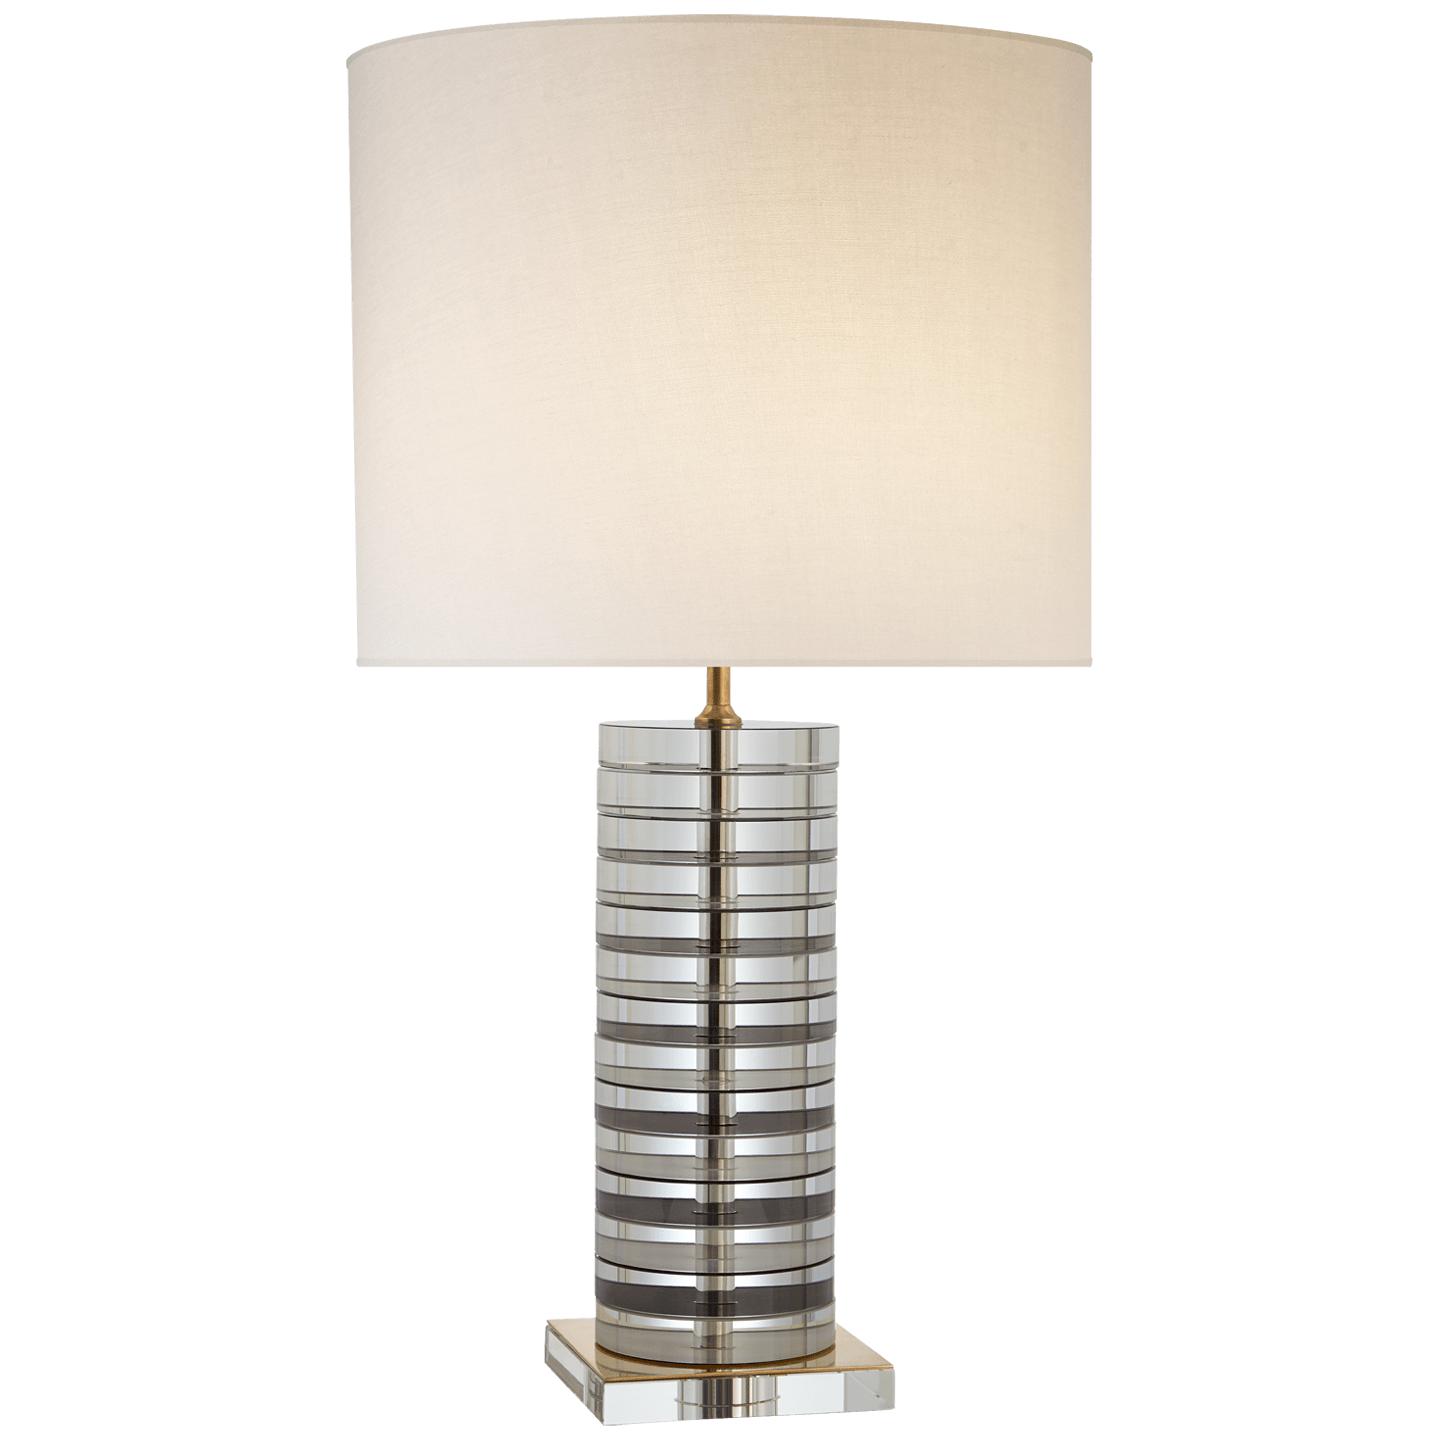 Купить Настольная лампа Grayson Stacked Table Lamp в интернет-магазине roooms.ru